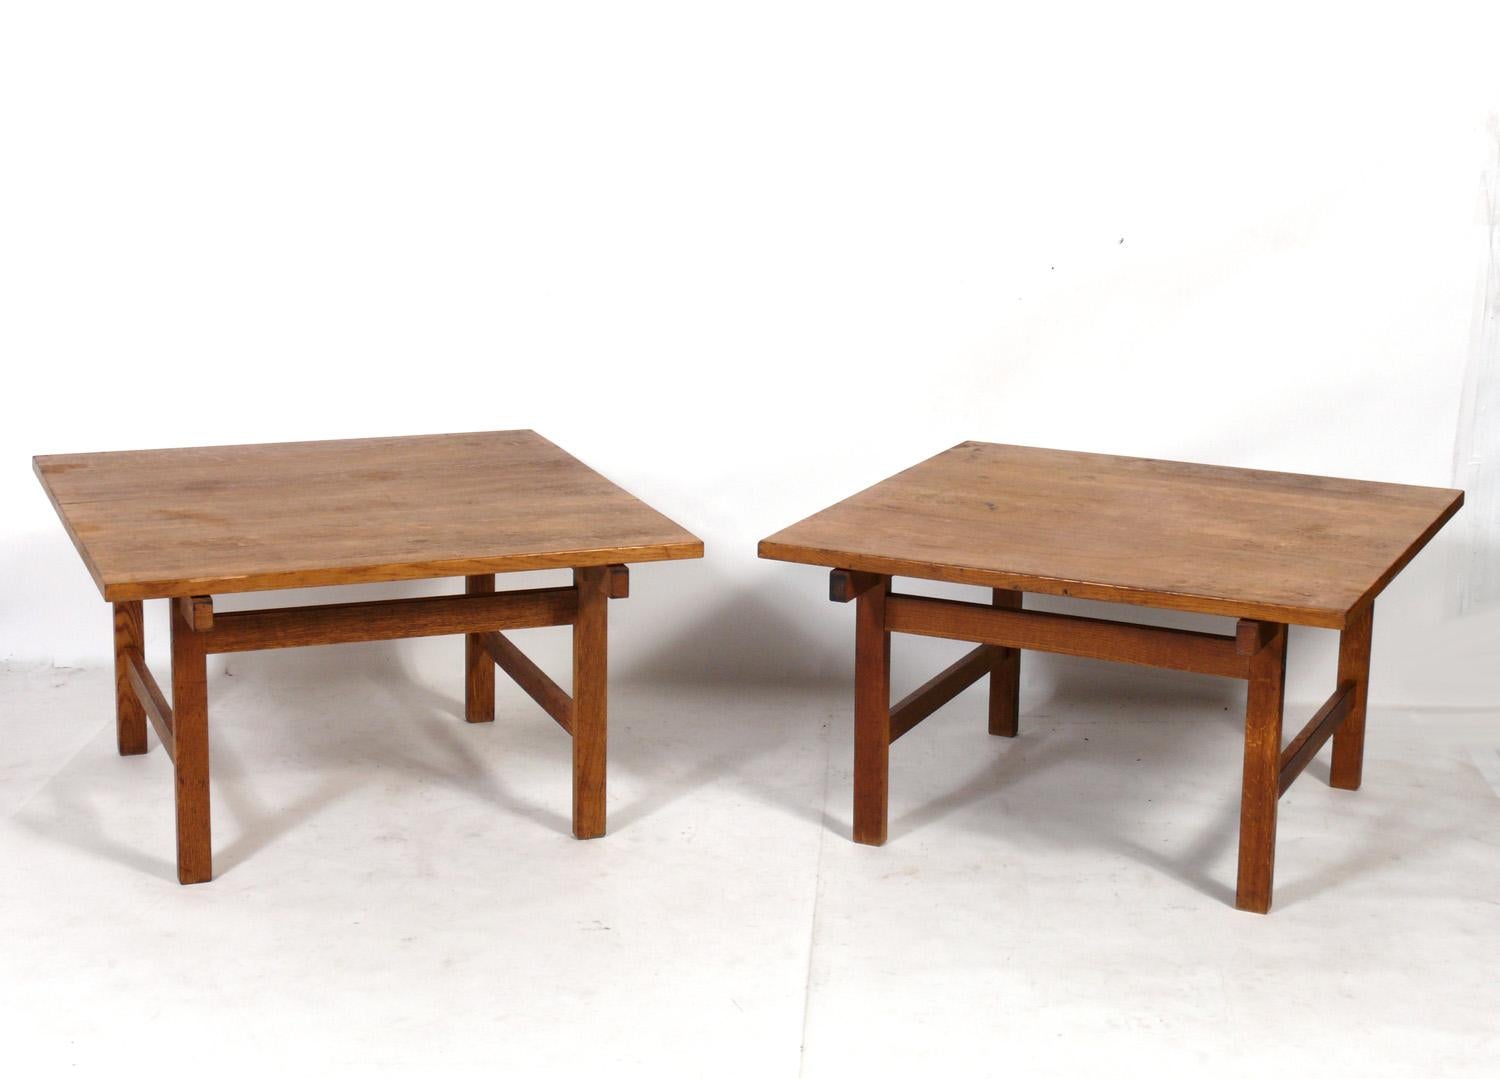 Zwei großformatige dänische moderne Eichenholztische, entworfen von Hans Wegner für Andreus Tuck, Dänemark, ca. 1950er Jahre. Diese Tische werden derzeit überarbeitet und werden nach ihrer Fertigstellung großartig aussehen. Sie haben eine